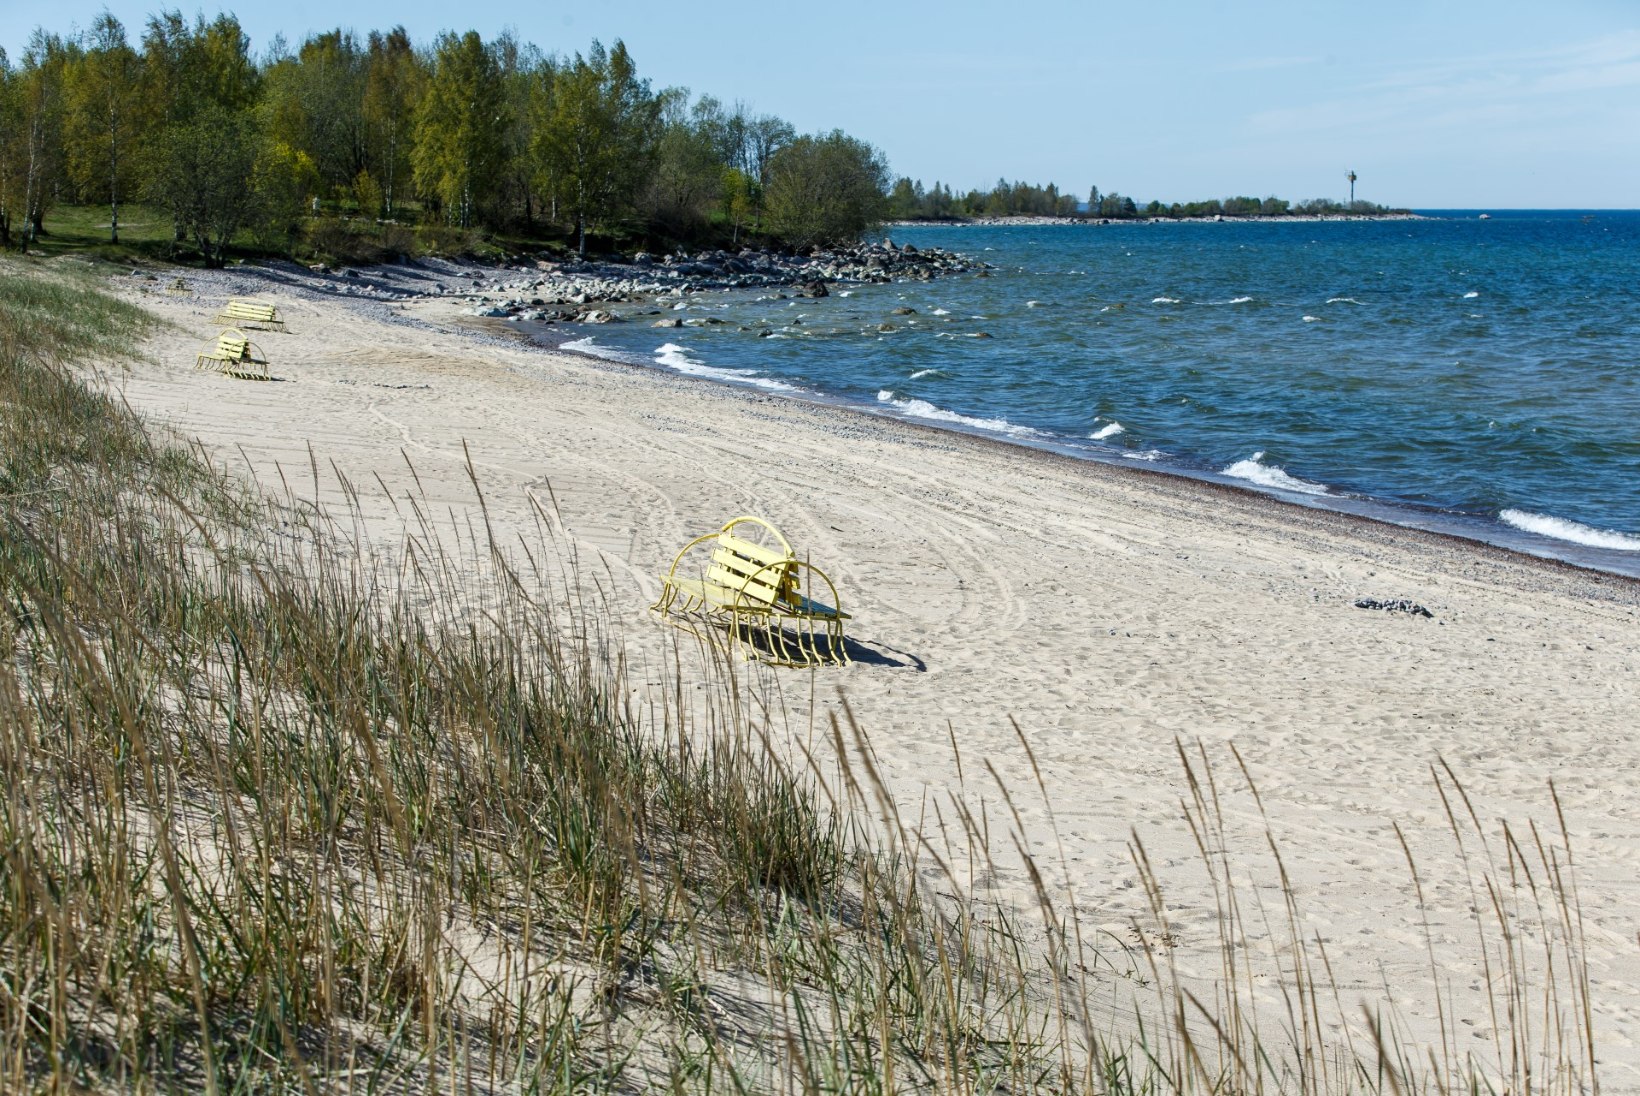 SINIVETIKAD LÄHENEVAD: tuule suuna muutus võib mürgise vetika Eesti randadesse tuua